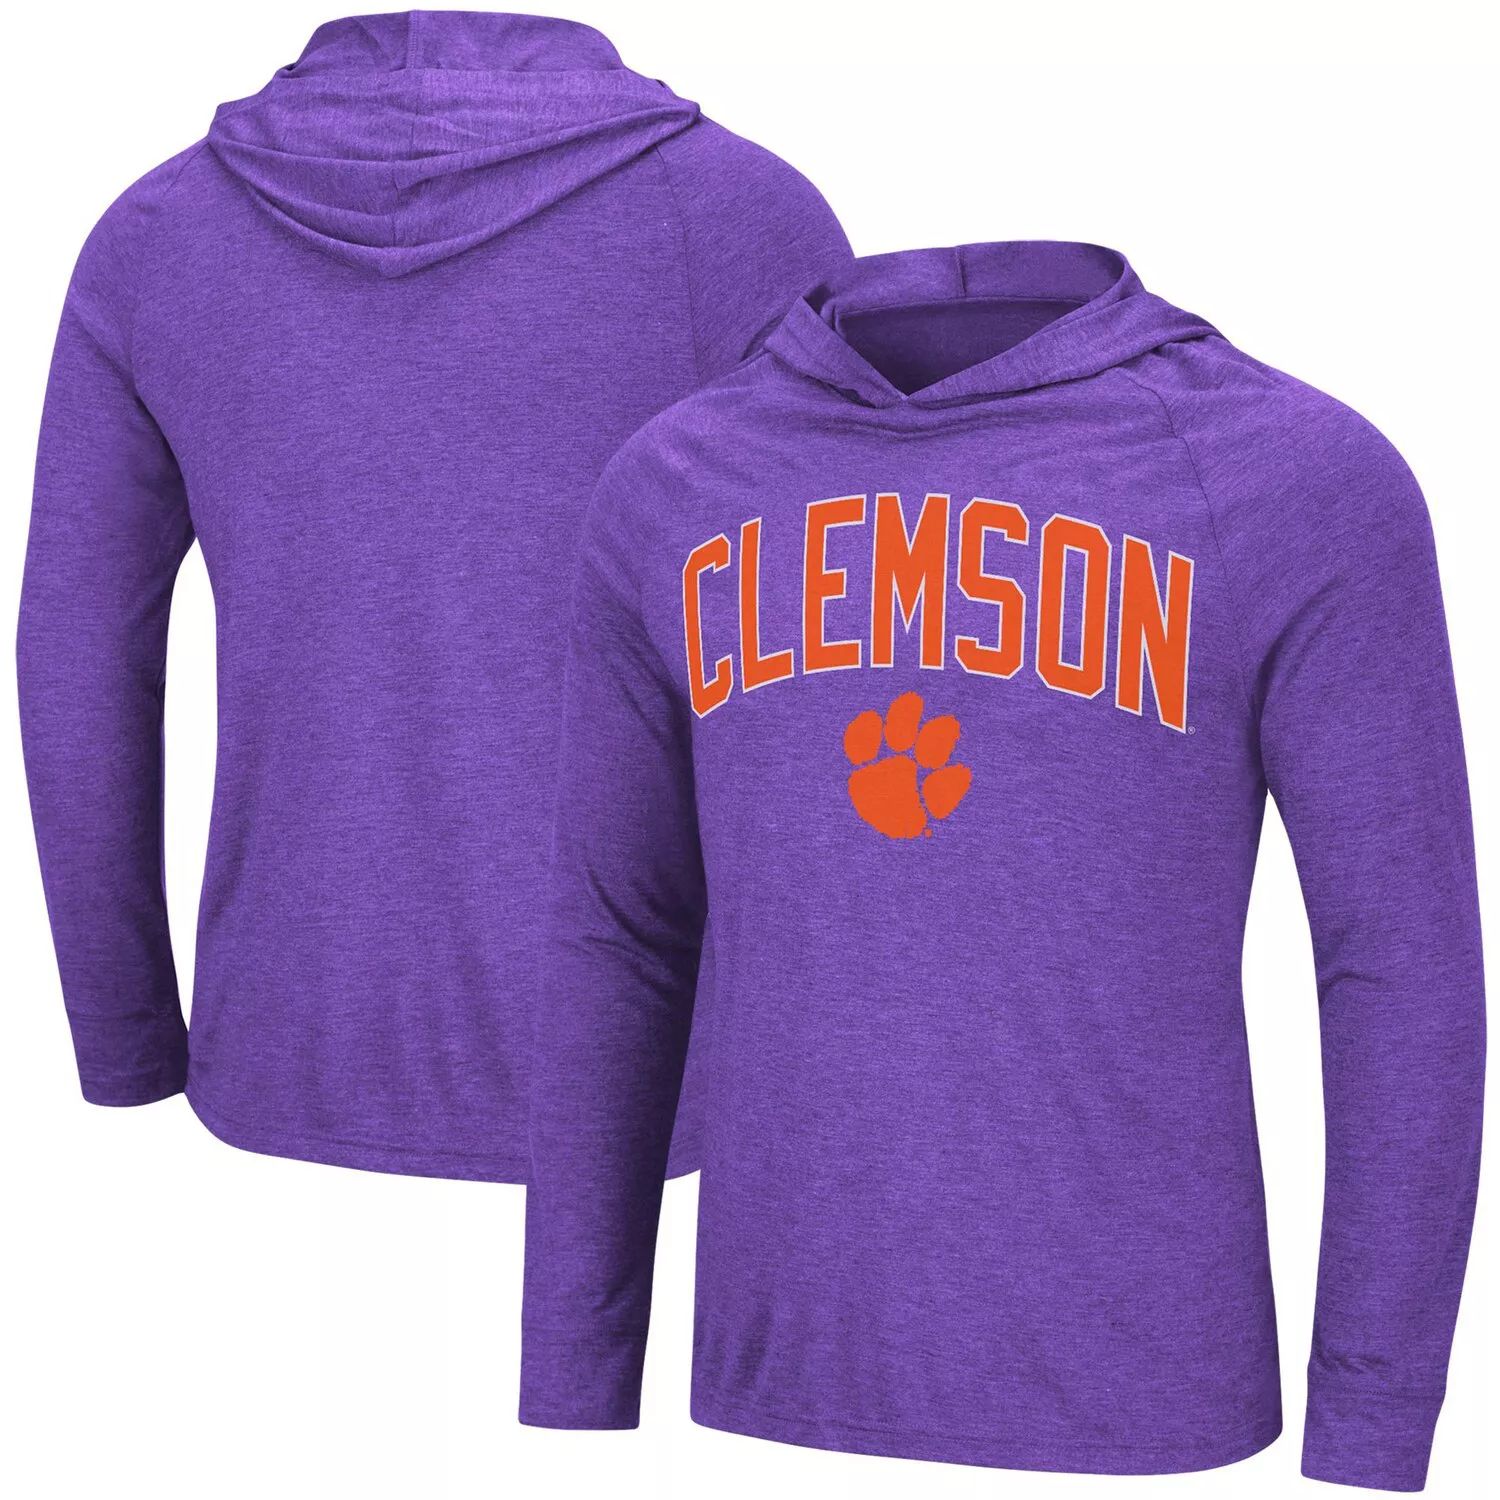 цена Мужская фиолетовая футболка с капюшоном Clemson Tigers Big & Tall Wingman реглан с принтом меланжевого цвета Colosseum